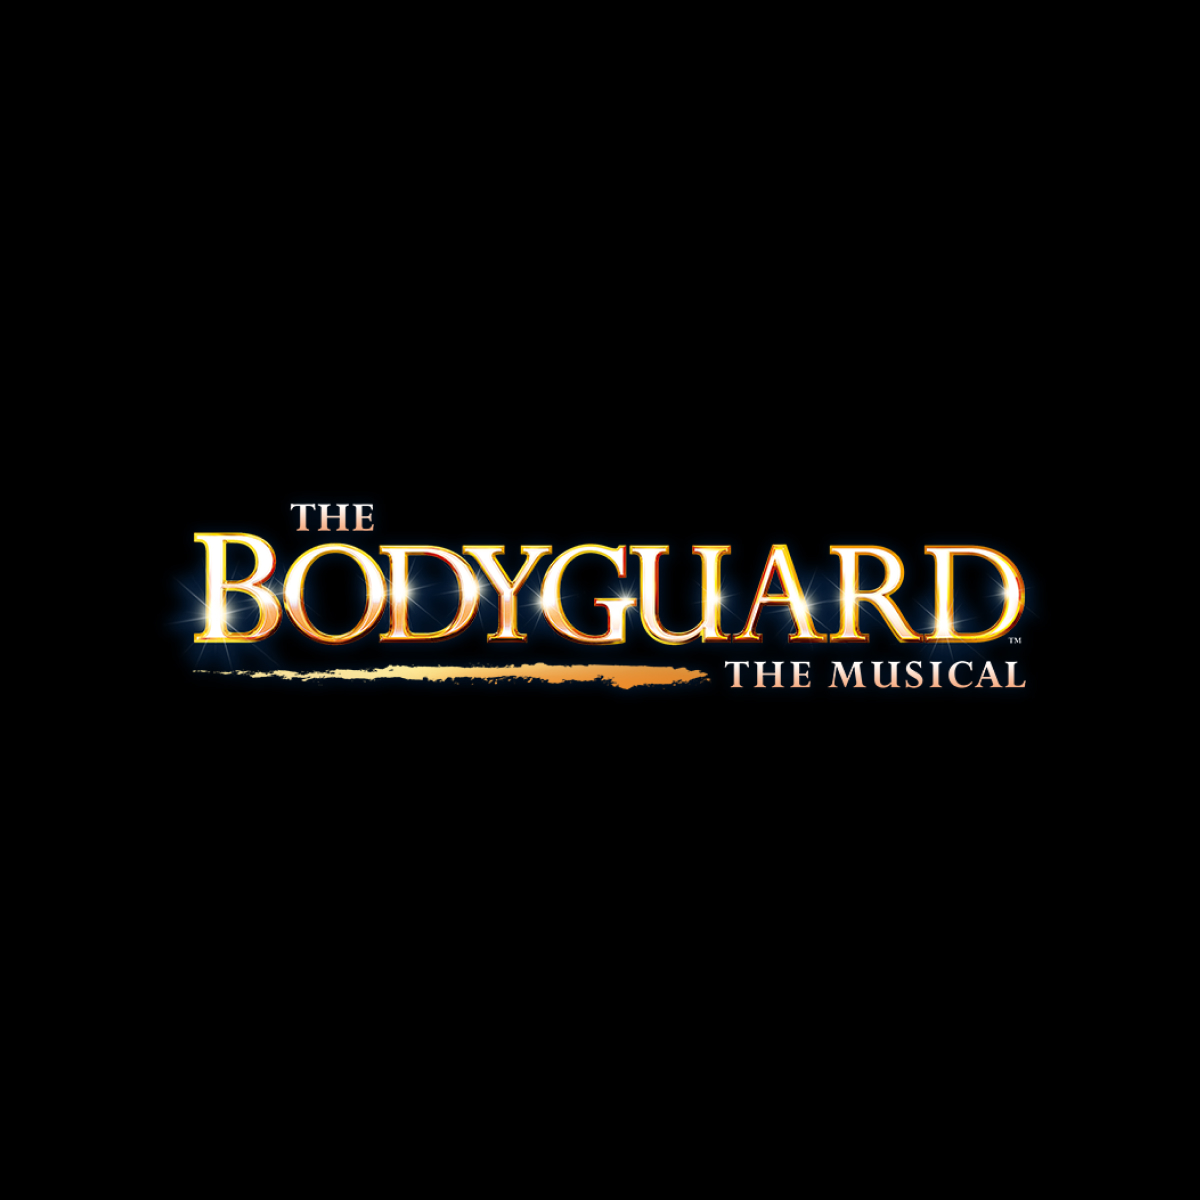 THE BODYGUARD - Bord Gáis Energy Theatre